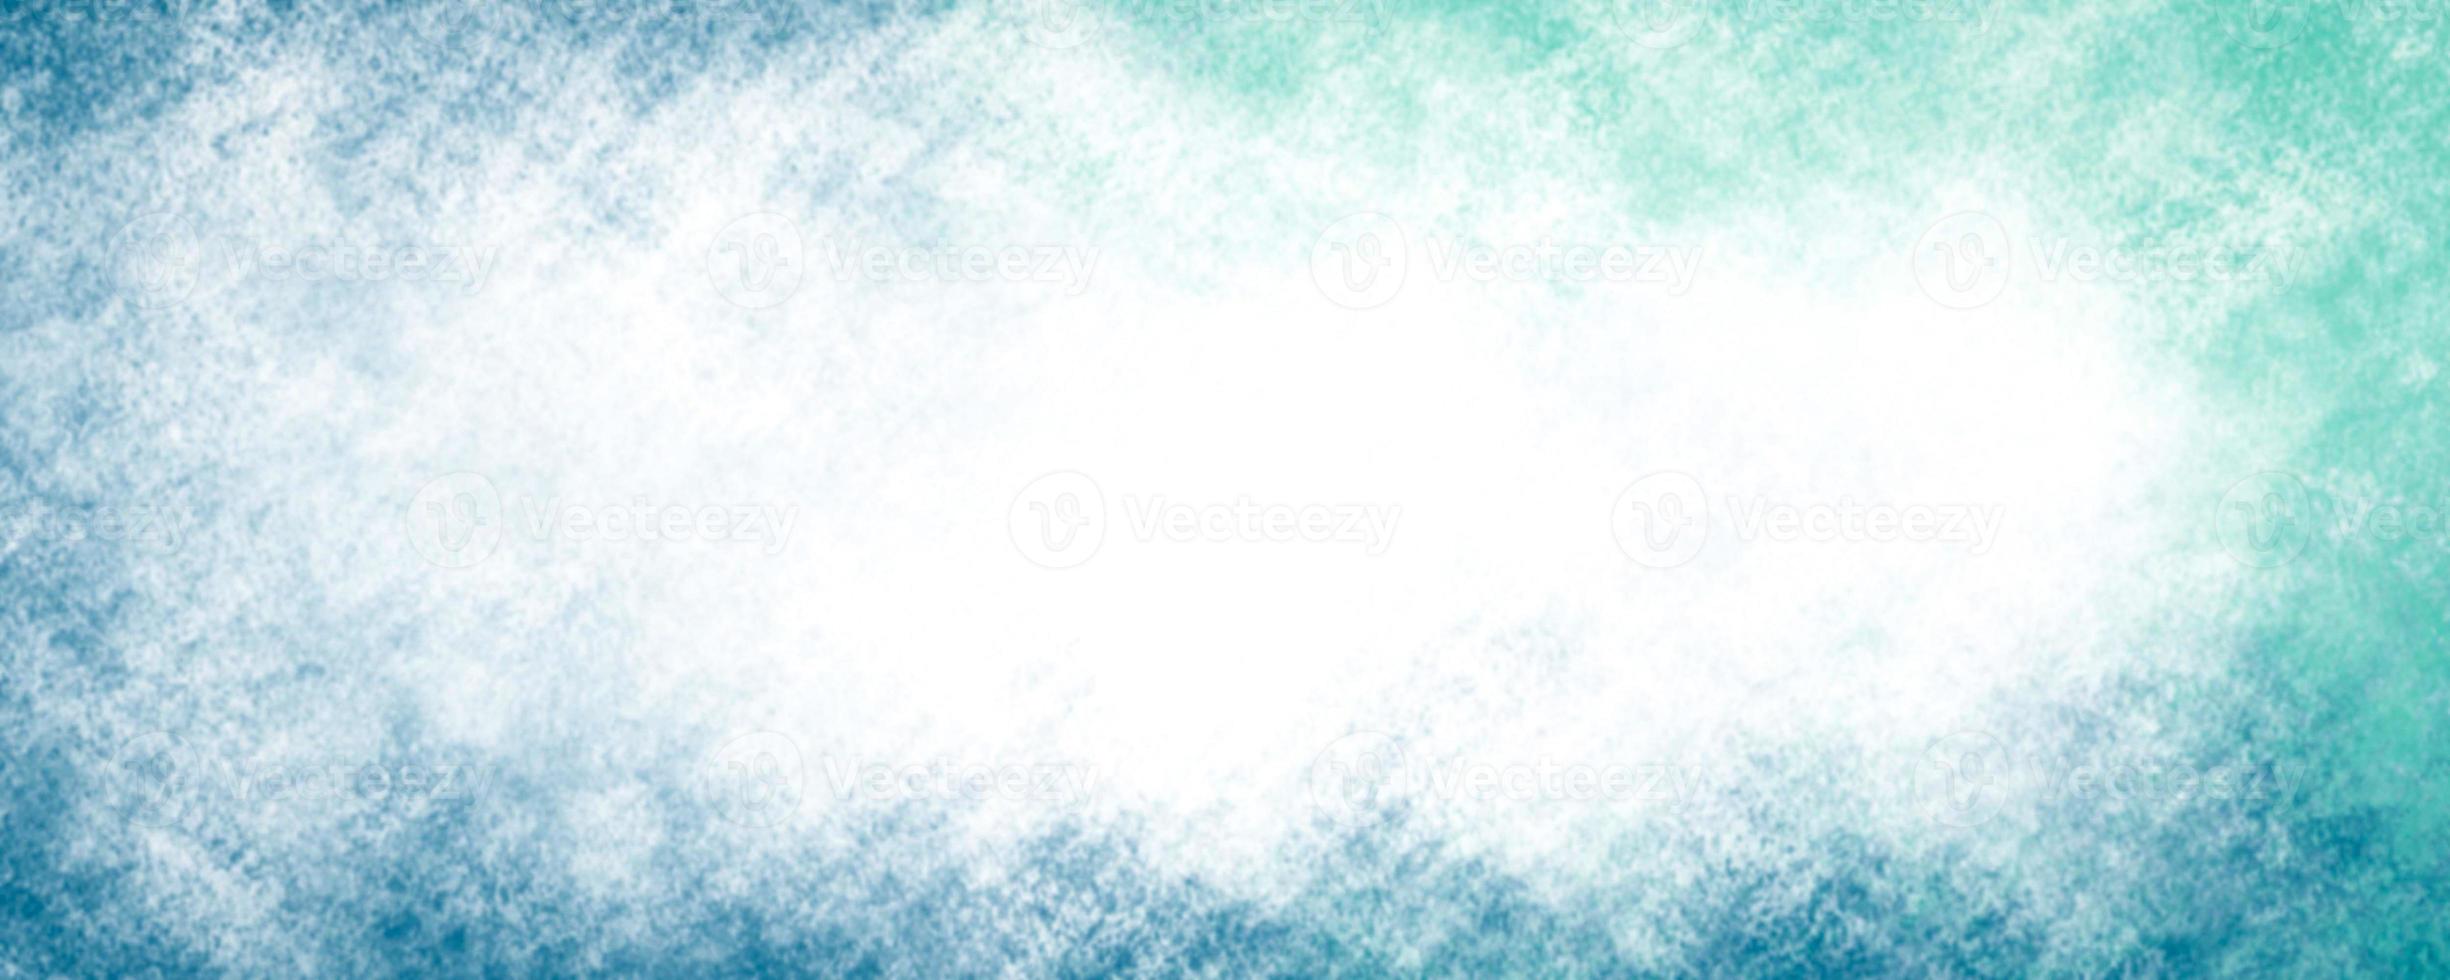 abstrato de fundo azul. gradiente de luz de fundo foto